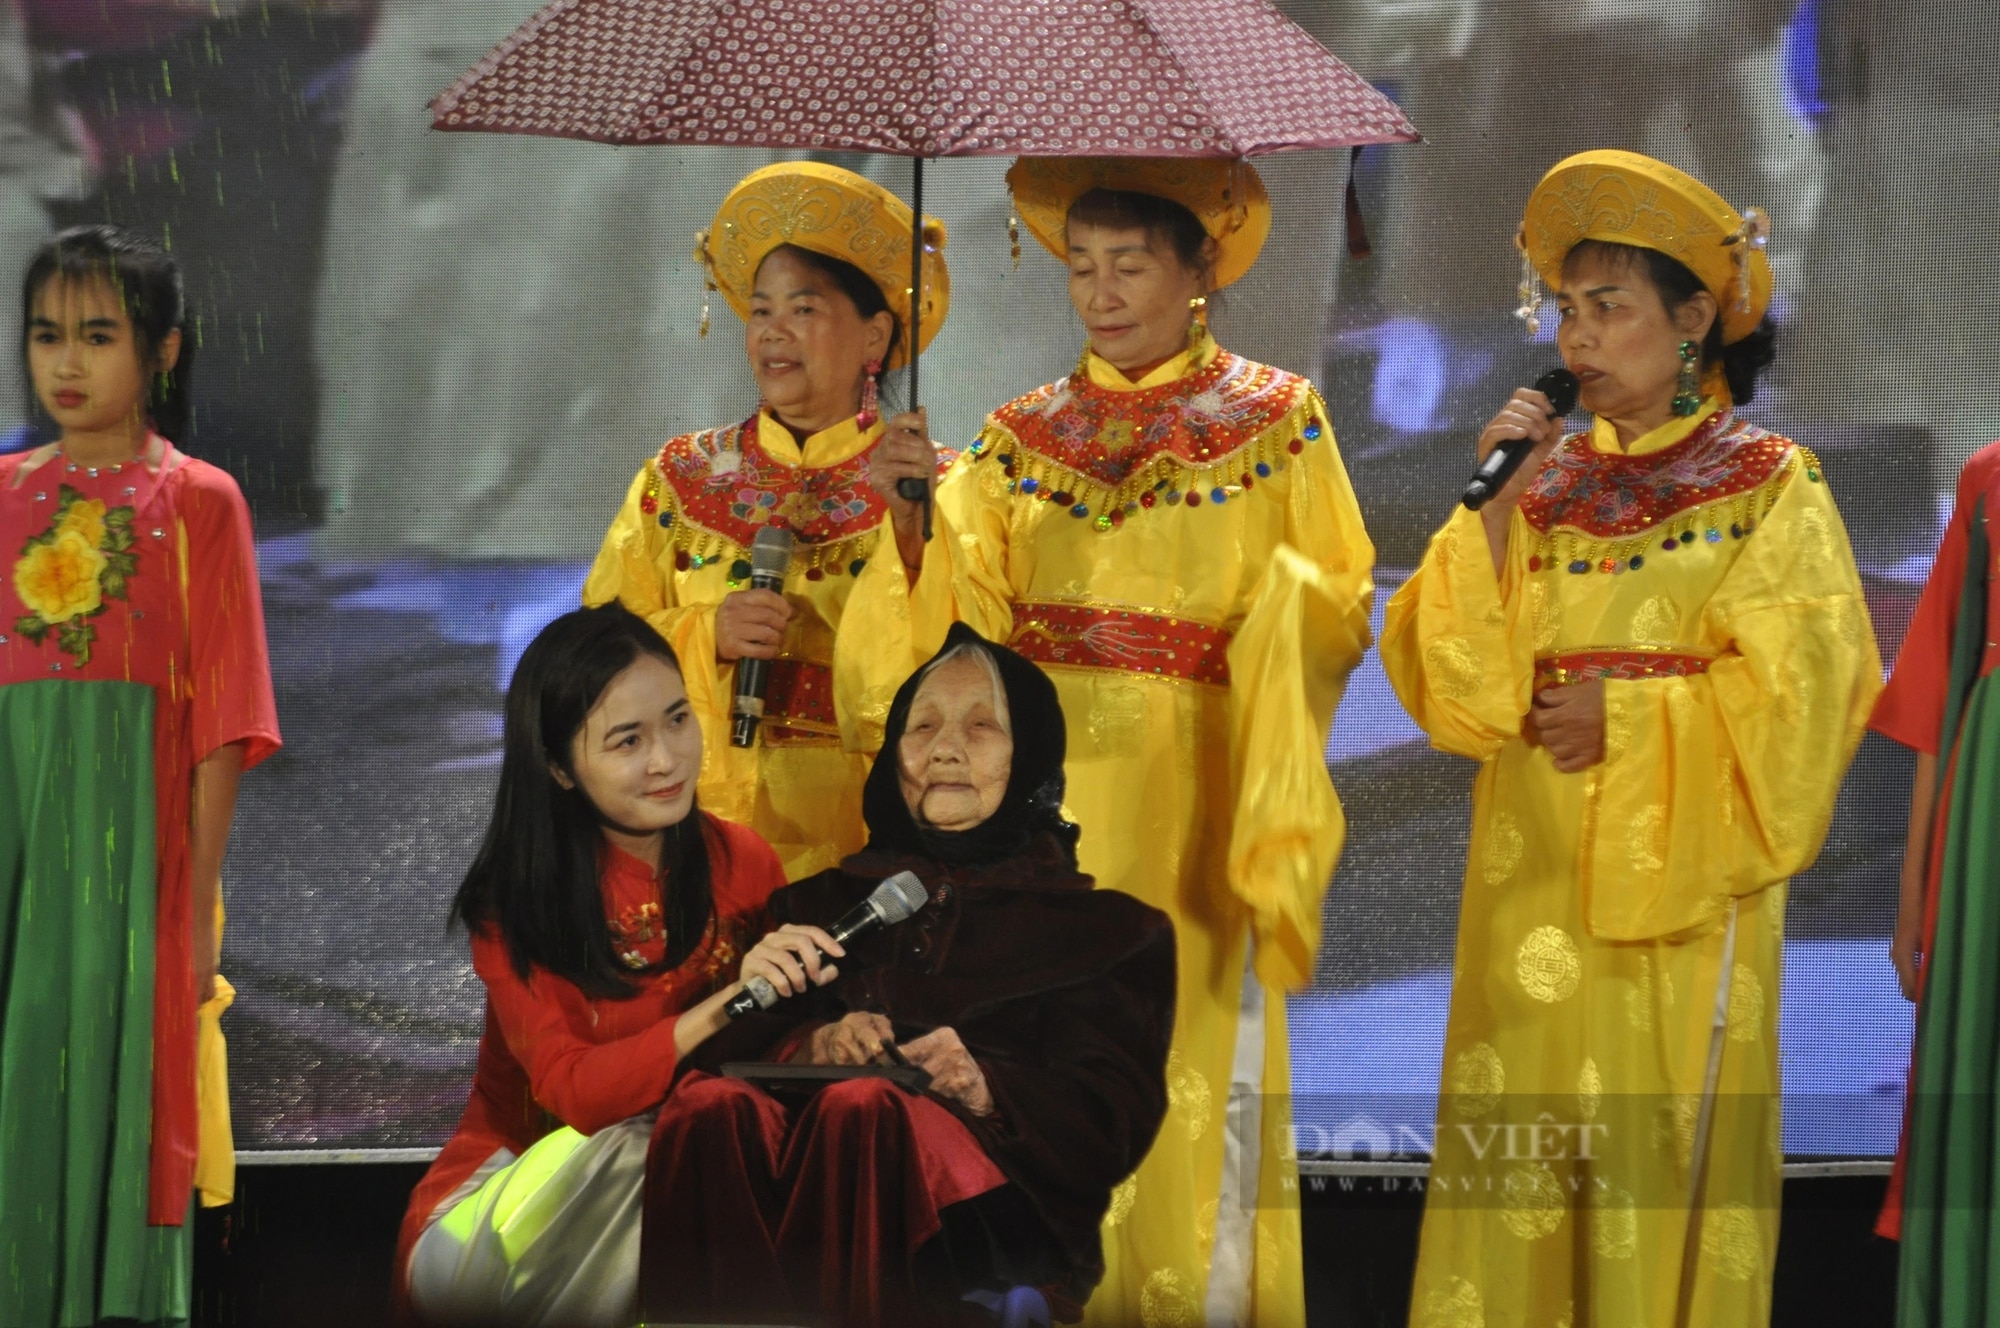 Huyện đầu tiên của cả nước đạt chuẩn nông thôn mới nâng cao là một huyện giàu truyền thống văn hóa của tỉnh Quảng Ninh- Ảnh 3.